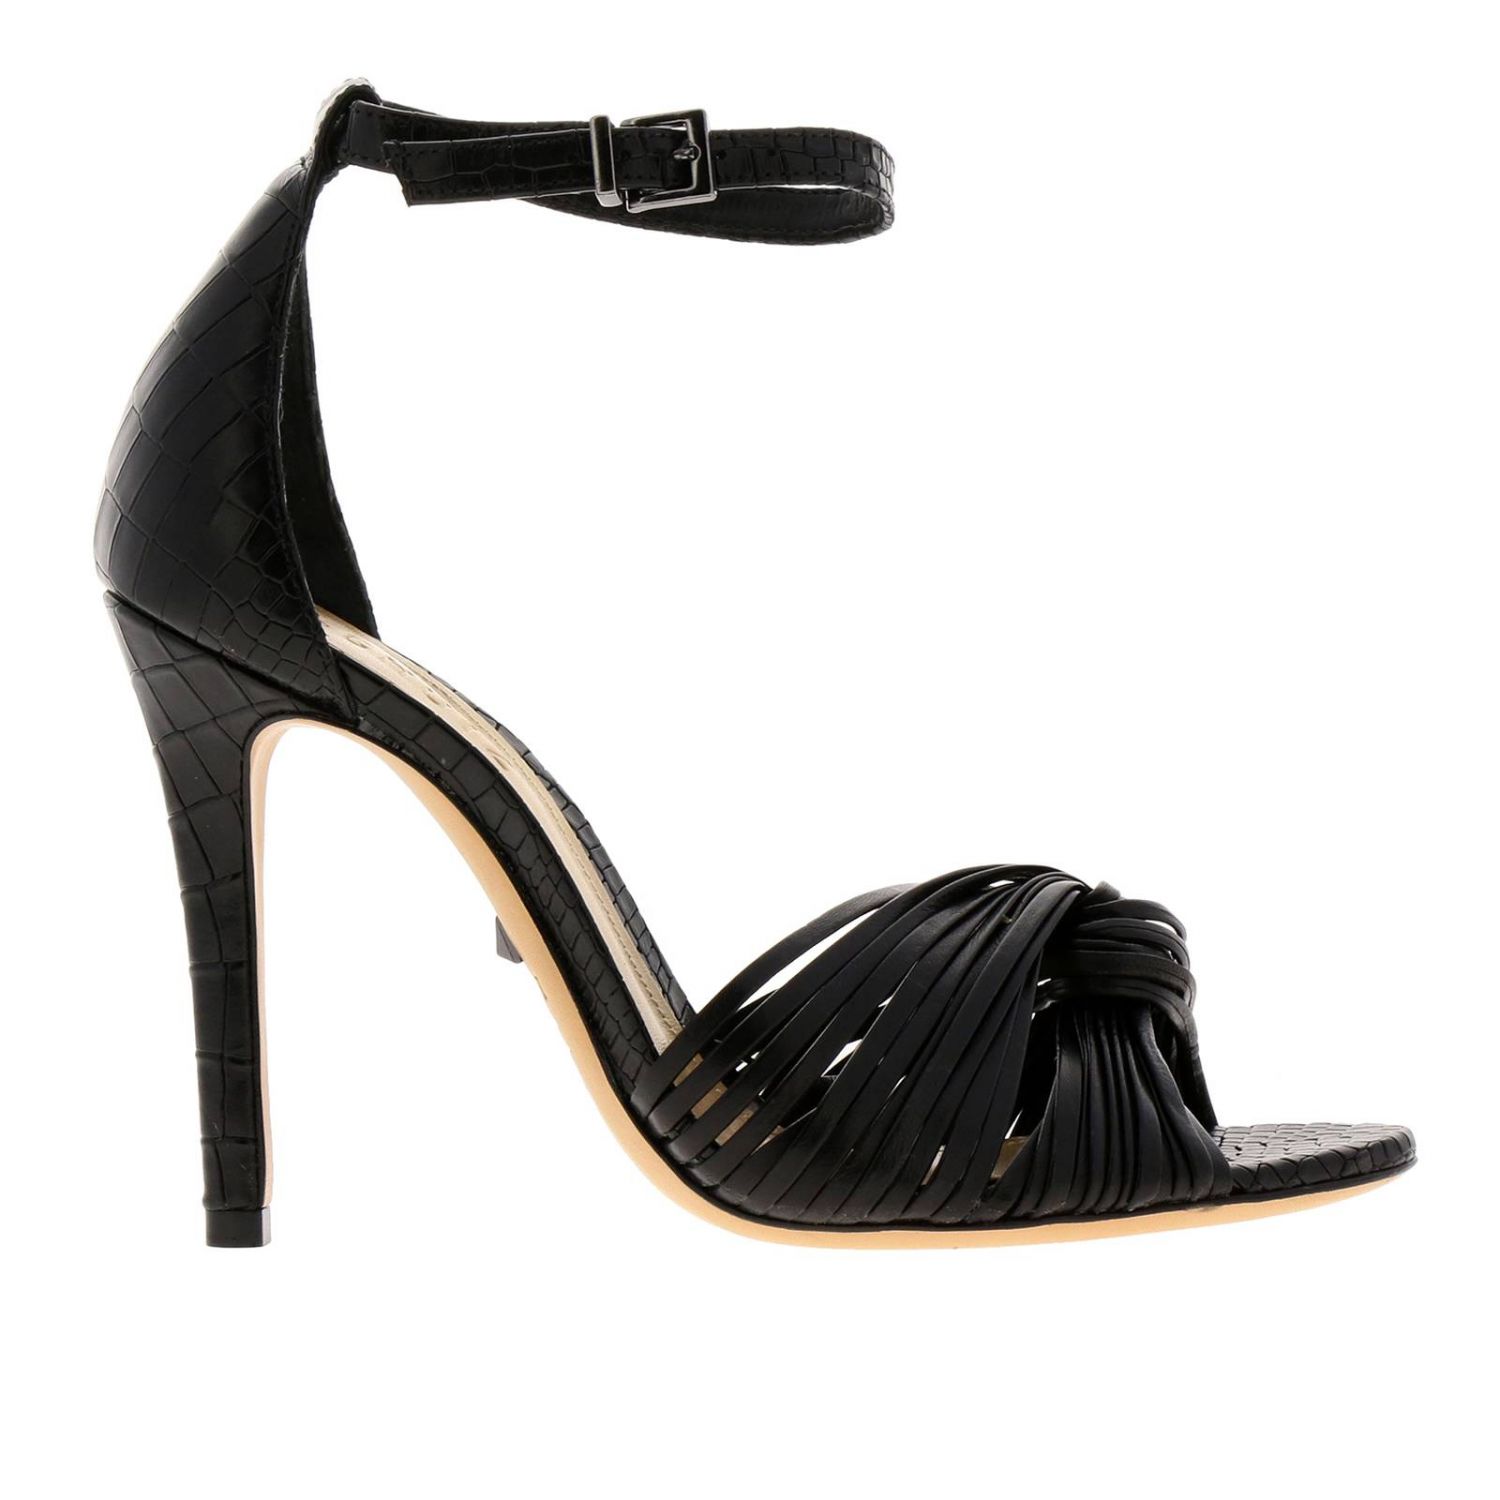 Schutz Outlet: Shoes women | Heeled Sandals Schutz Women Black | Heeled ...